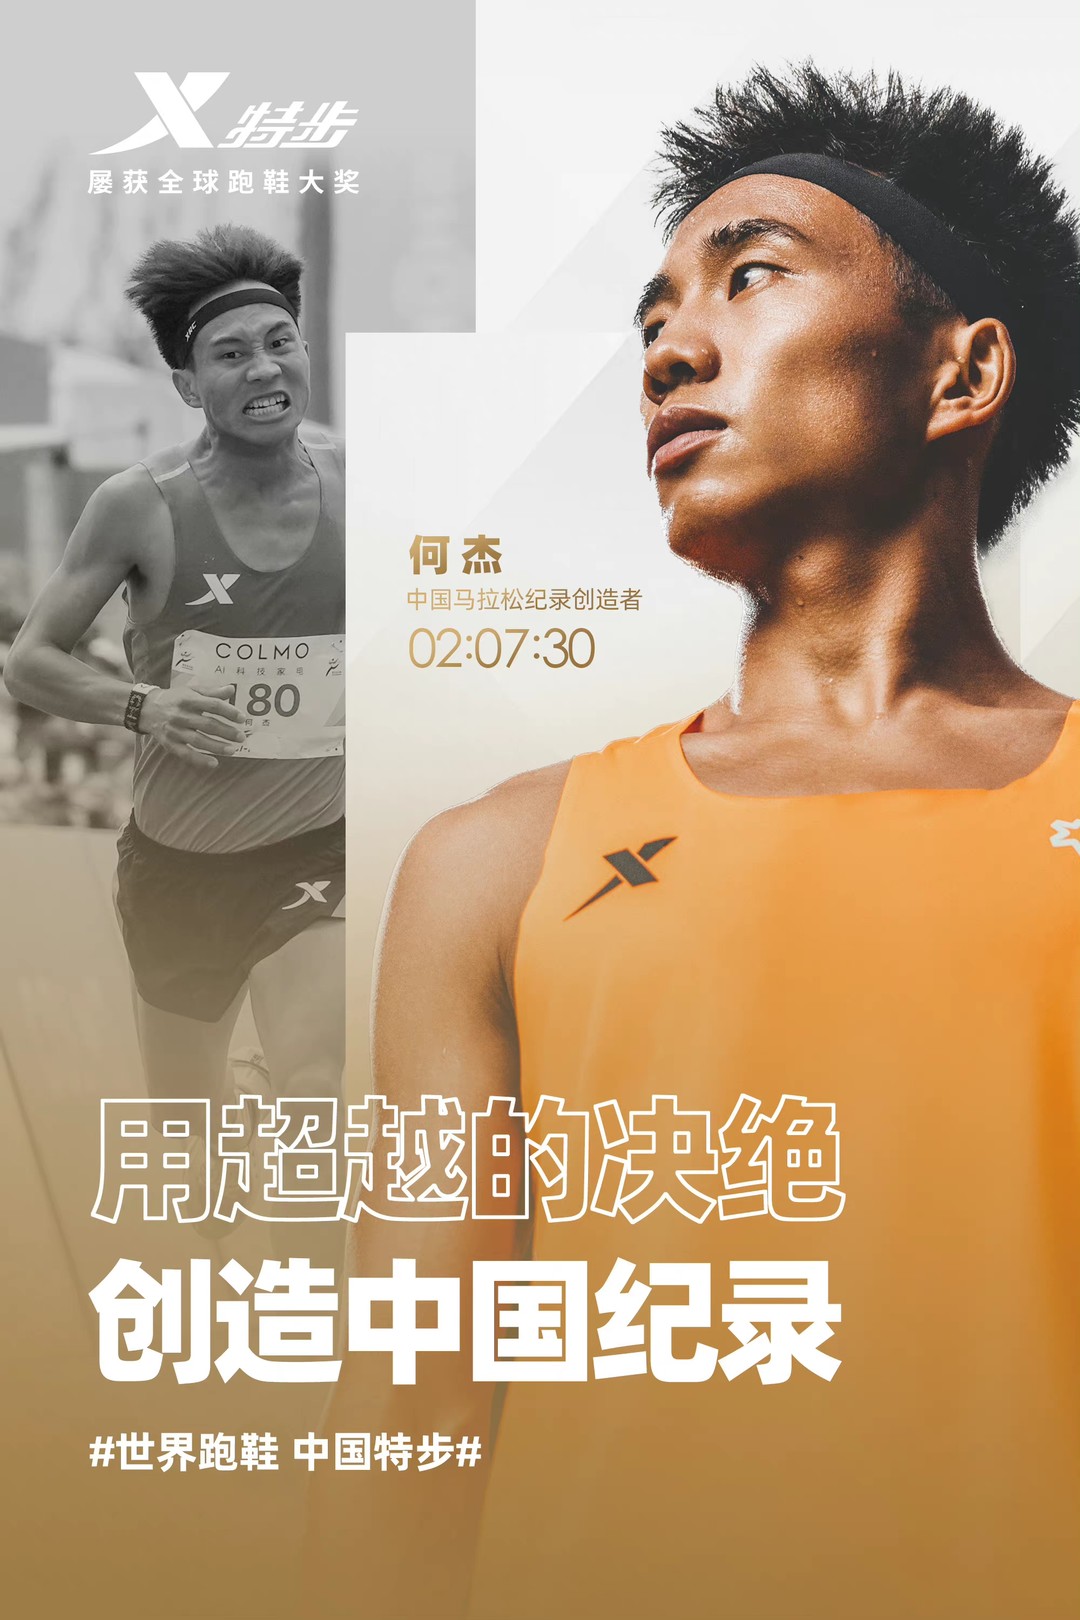 恭喜何杰、杨绍辉双双打破男子马拉松中国记录，“国货之光”特步助力“中国速度”